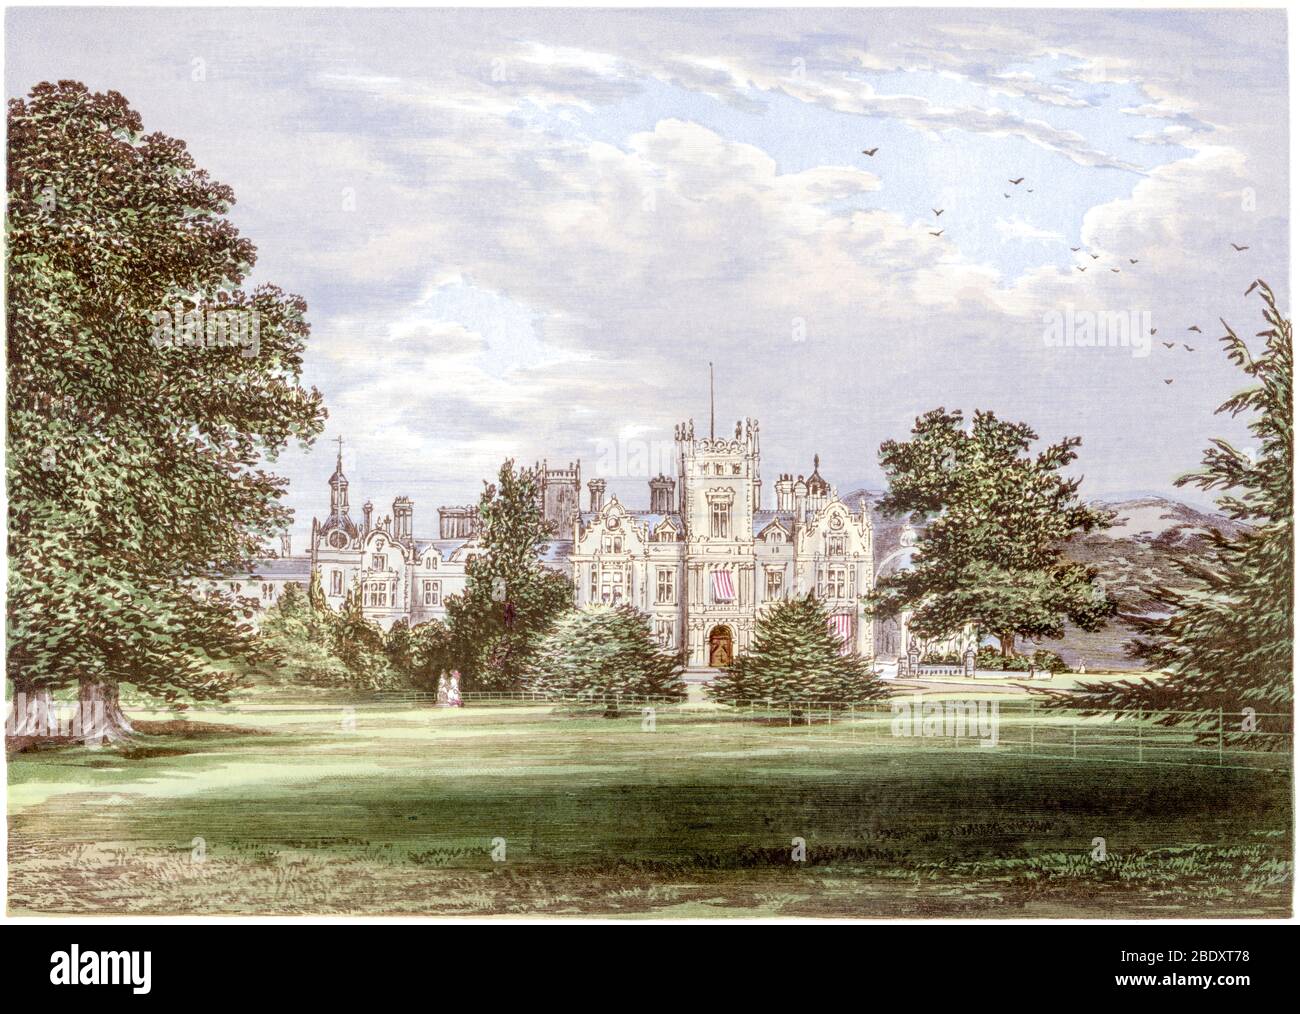 Eine farbige Illustration von Preston Hall bei Aylesford, Kent, gescannt in hoher Auflösung aus einem 1870 gedruckten Buch. Ich glaubte, dass das Urheberrecht frei ist. Stockfoto